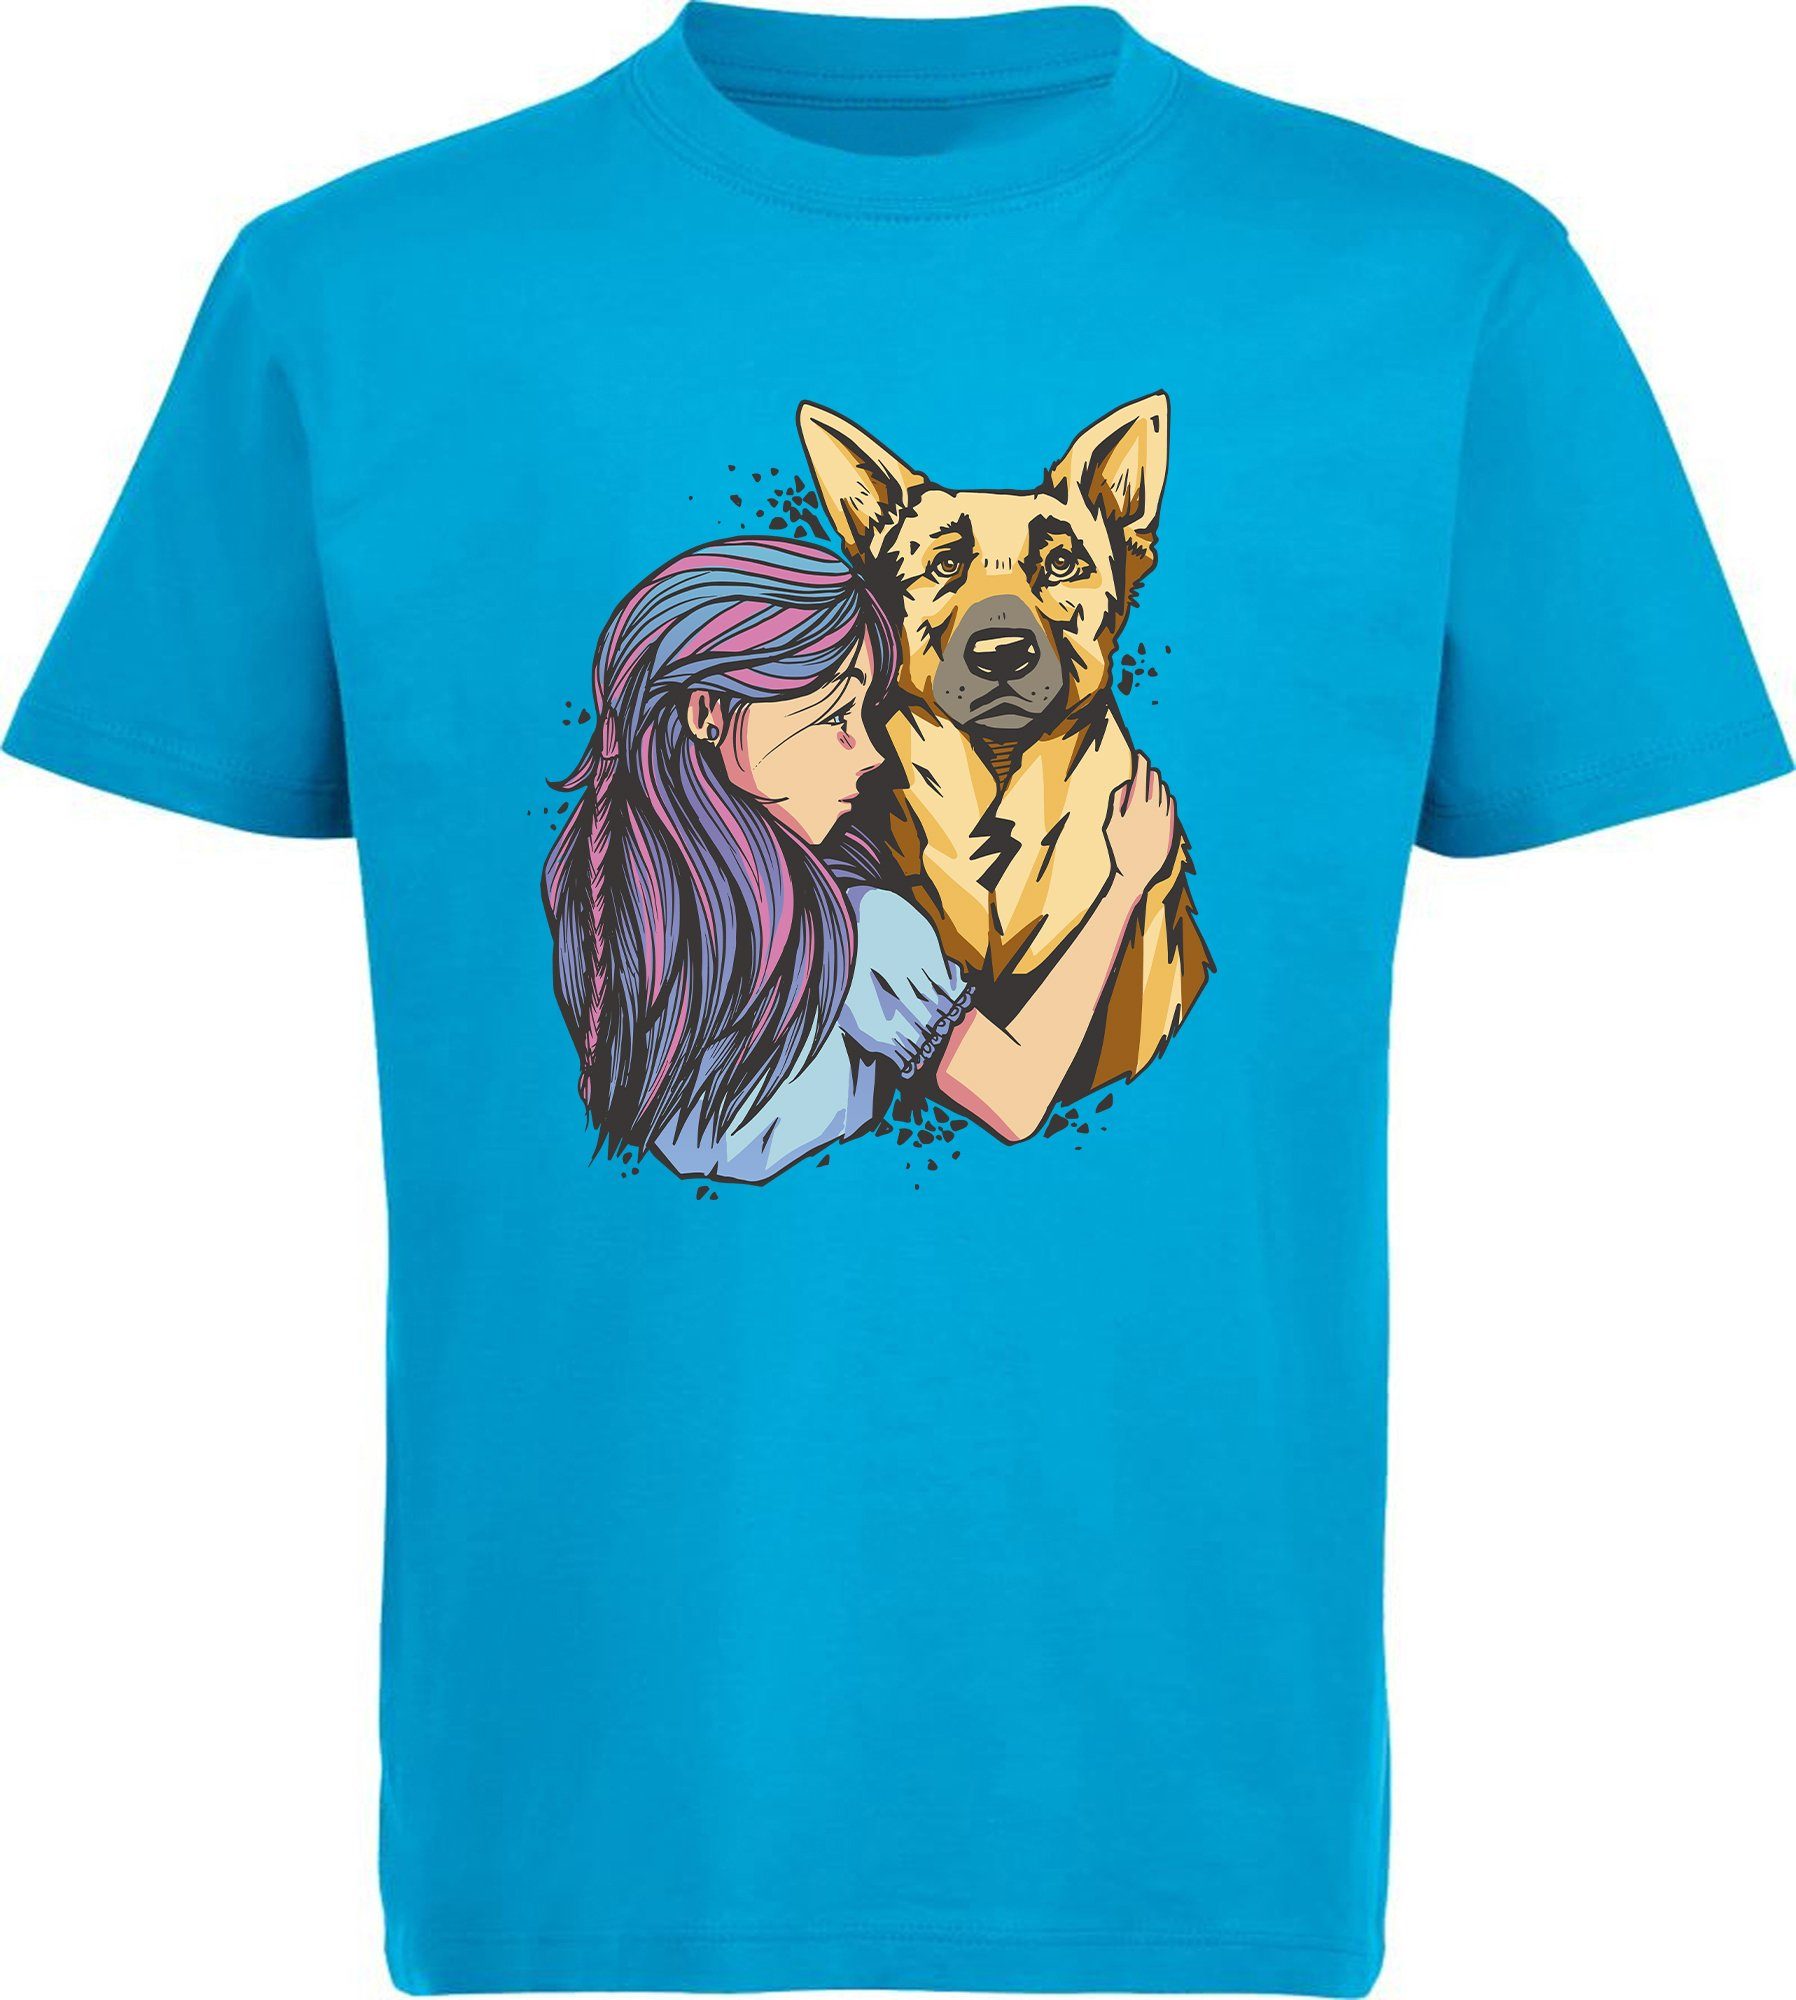 MyDesign24 T-Shirt Kinder Hunde Print Shirt bedruckt - Schäferhund mit Mädchen Baumwollshirt mit Aufdruck, i258 aqua blau